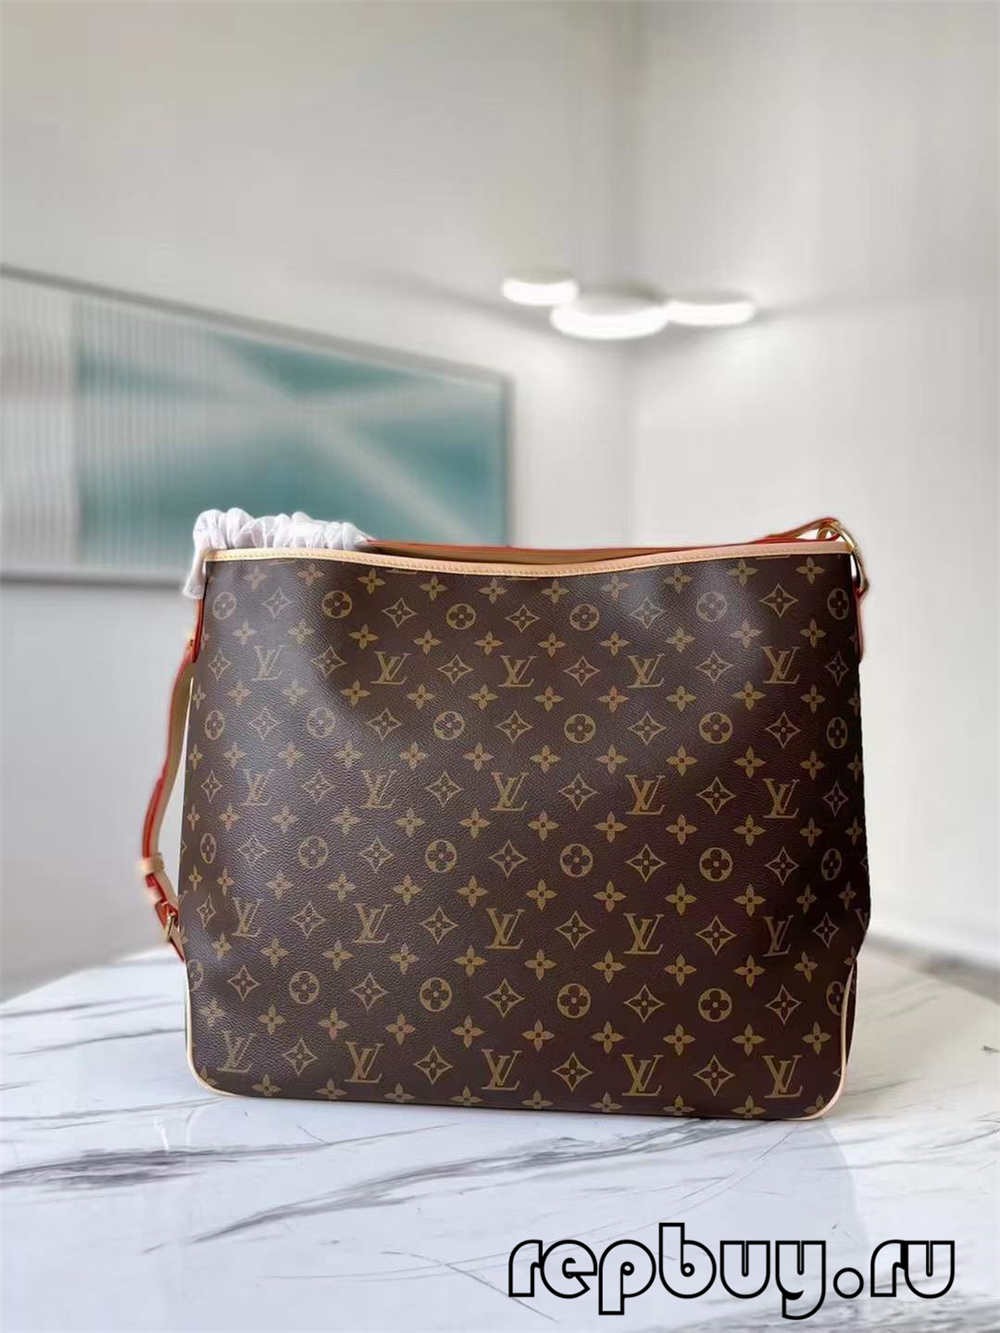 Louis Vuitton M40353 replikväska av högsta kvalitet (2022 uppdaterad)-Bästa kvalitet Fake Louis Vuitton Bag Online Store, Replica designer bag ru